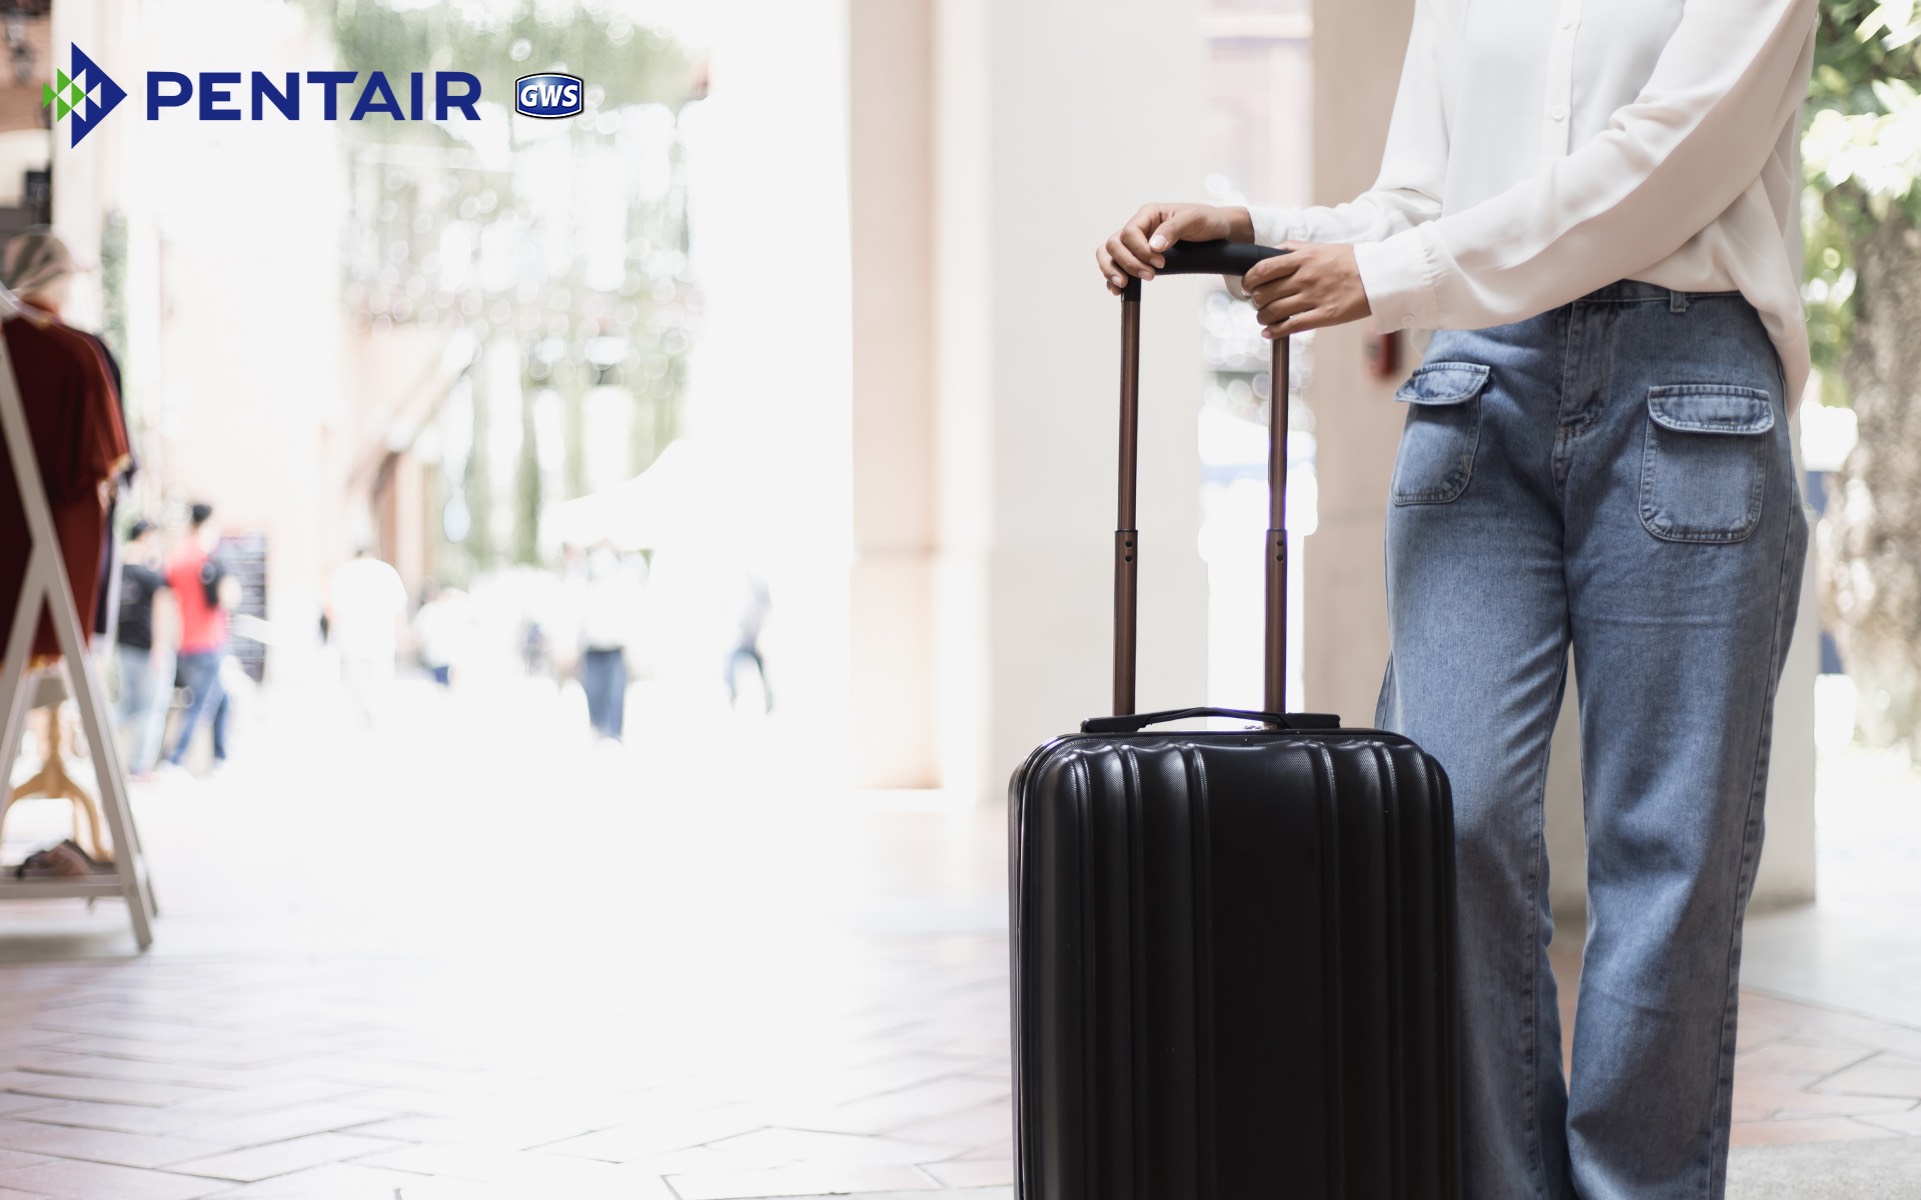 Bạn chỉ cần chuẩn bị hành lý gọn nhẹ cho những chuyến đi ngắn ngày